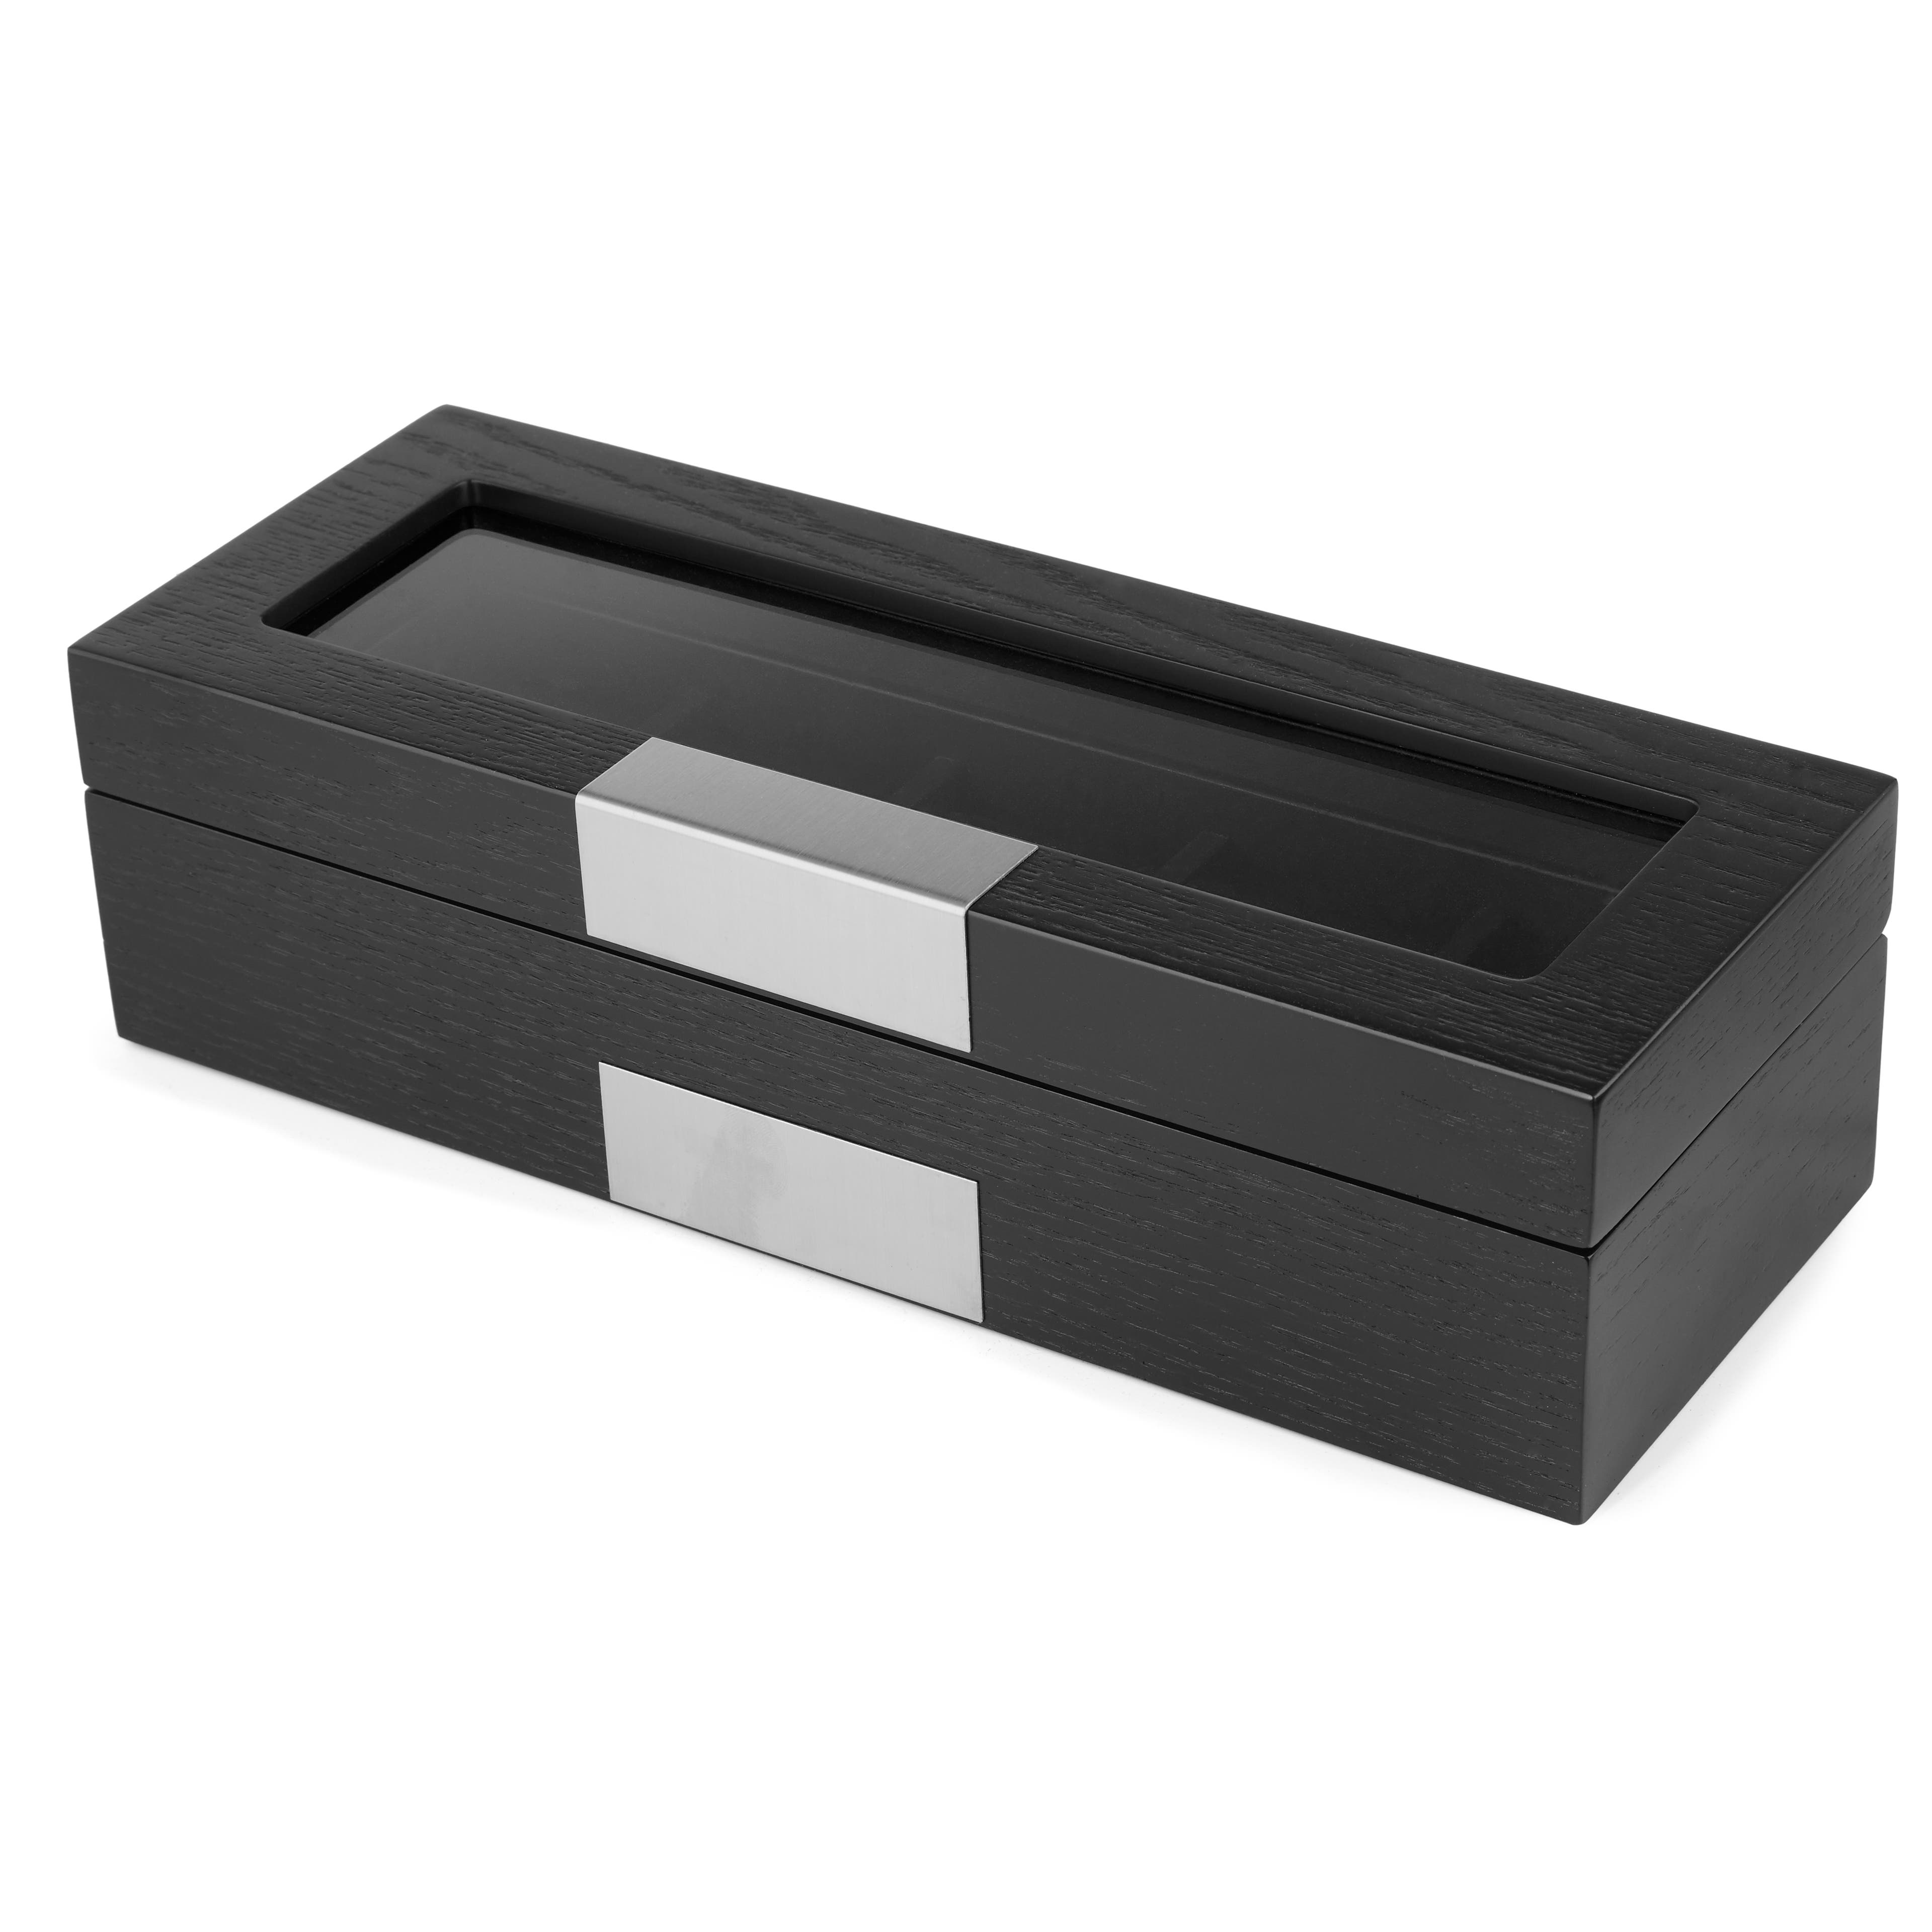 Caja para relojes de madera en negro y plateado